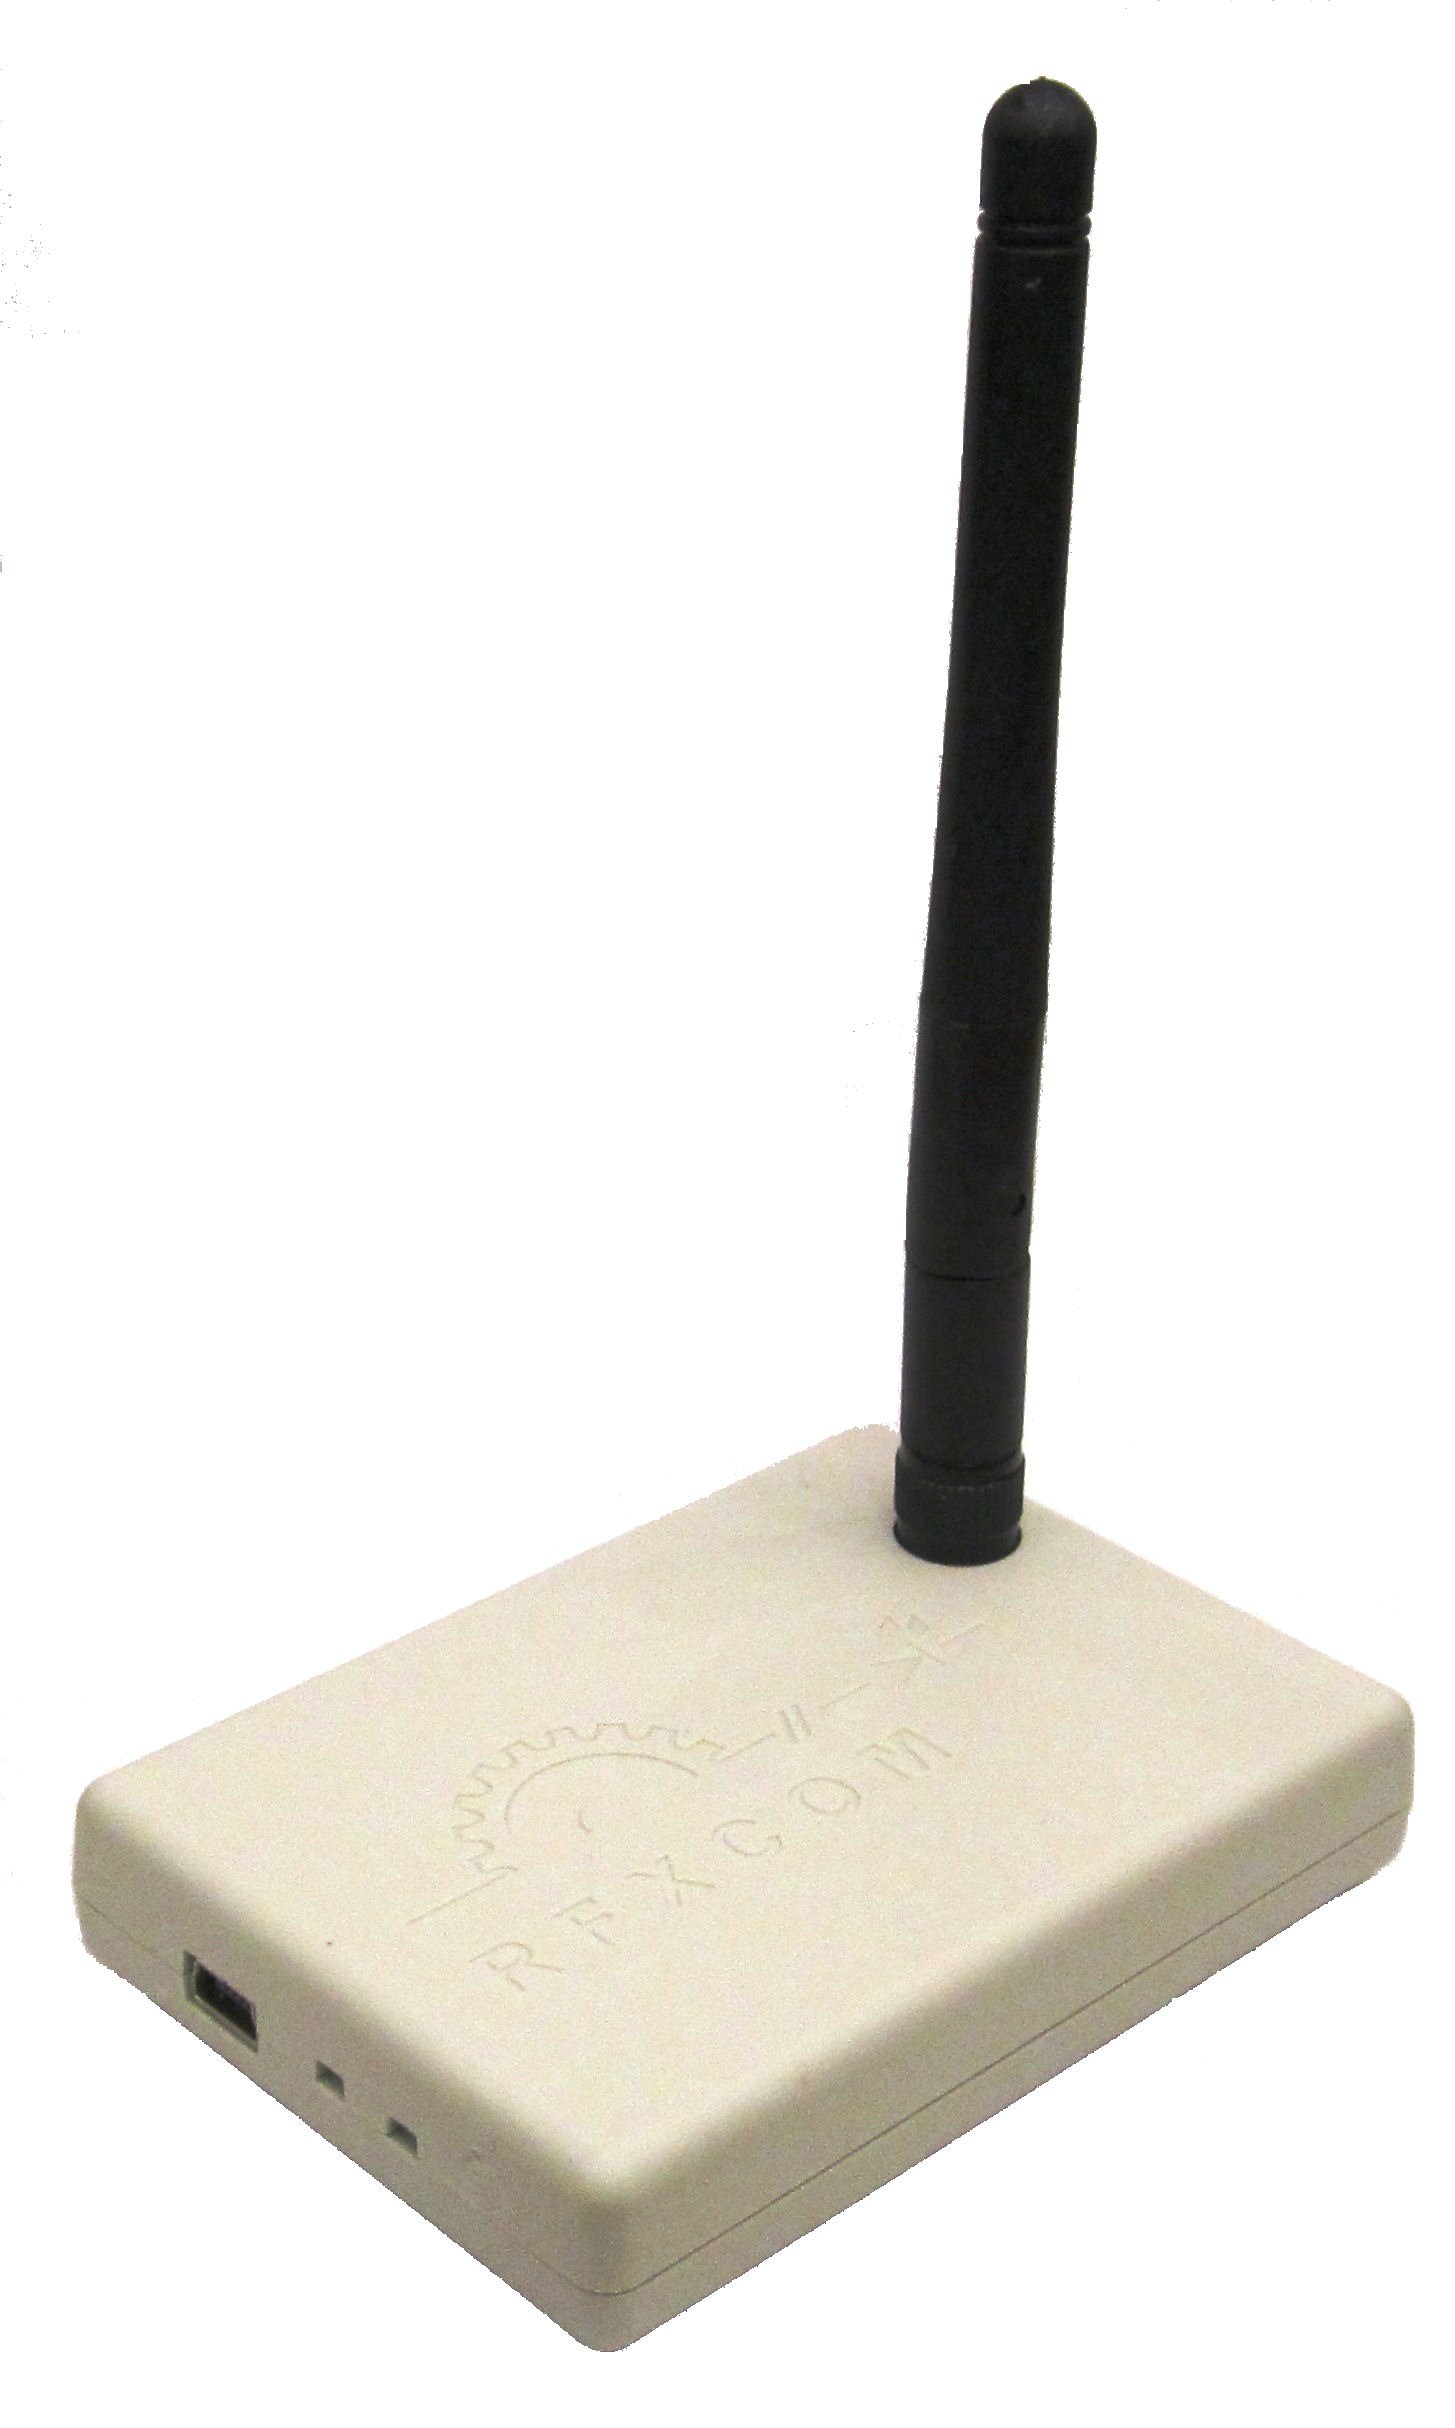 RFXtrx433E - 433.92 MHz transceiver